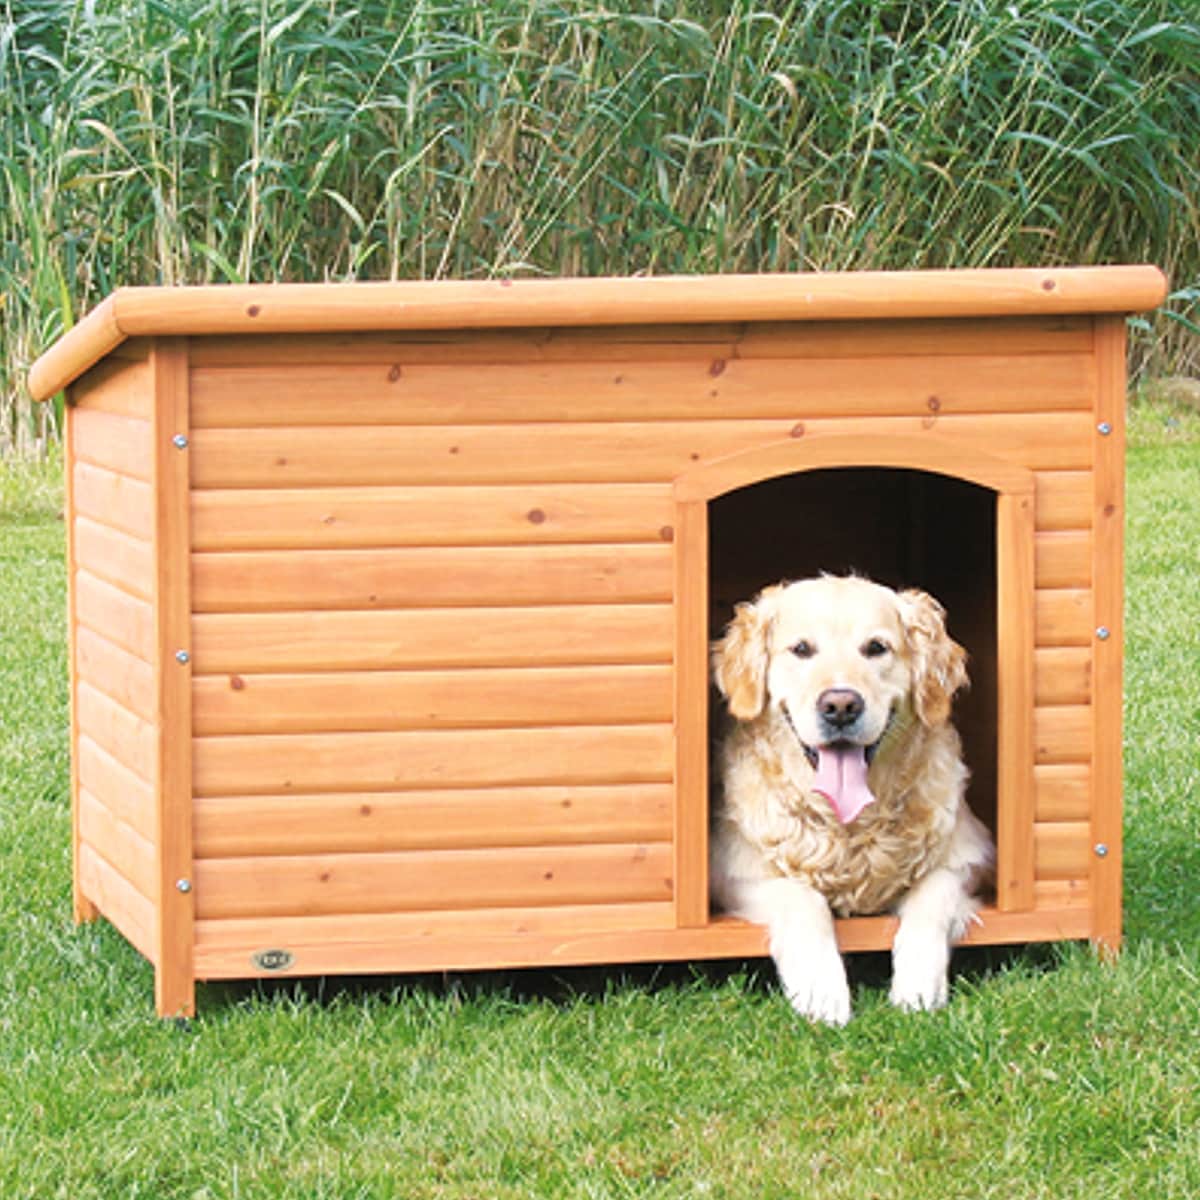 extra large dog house